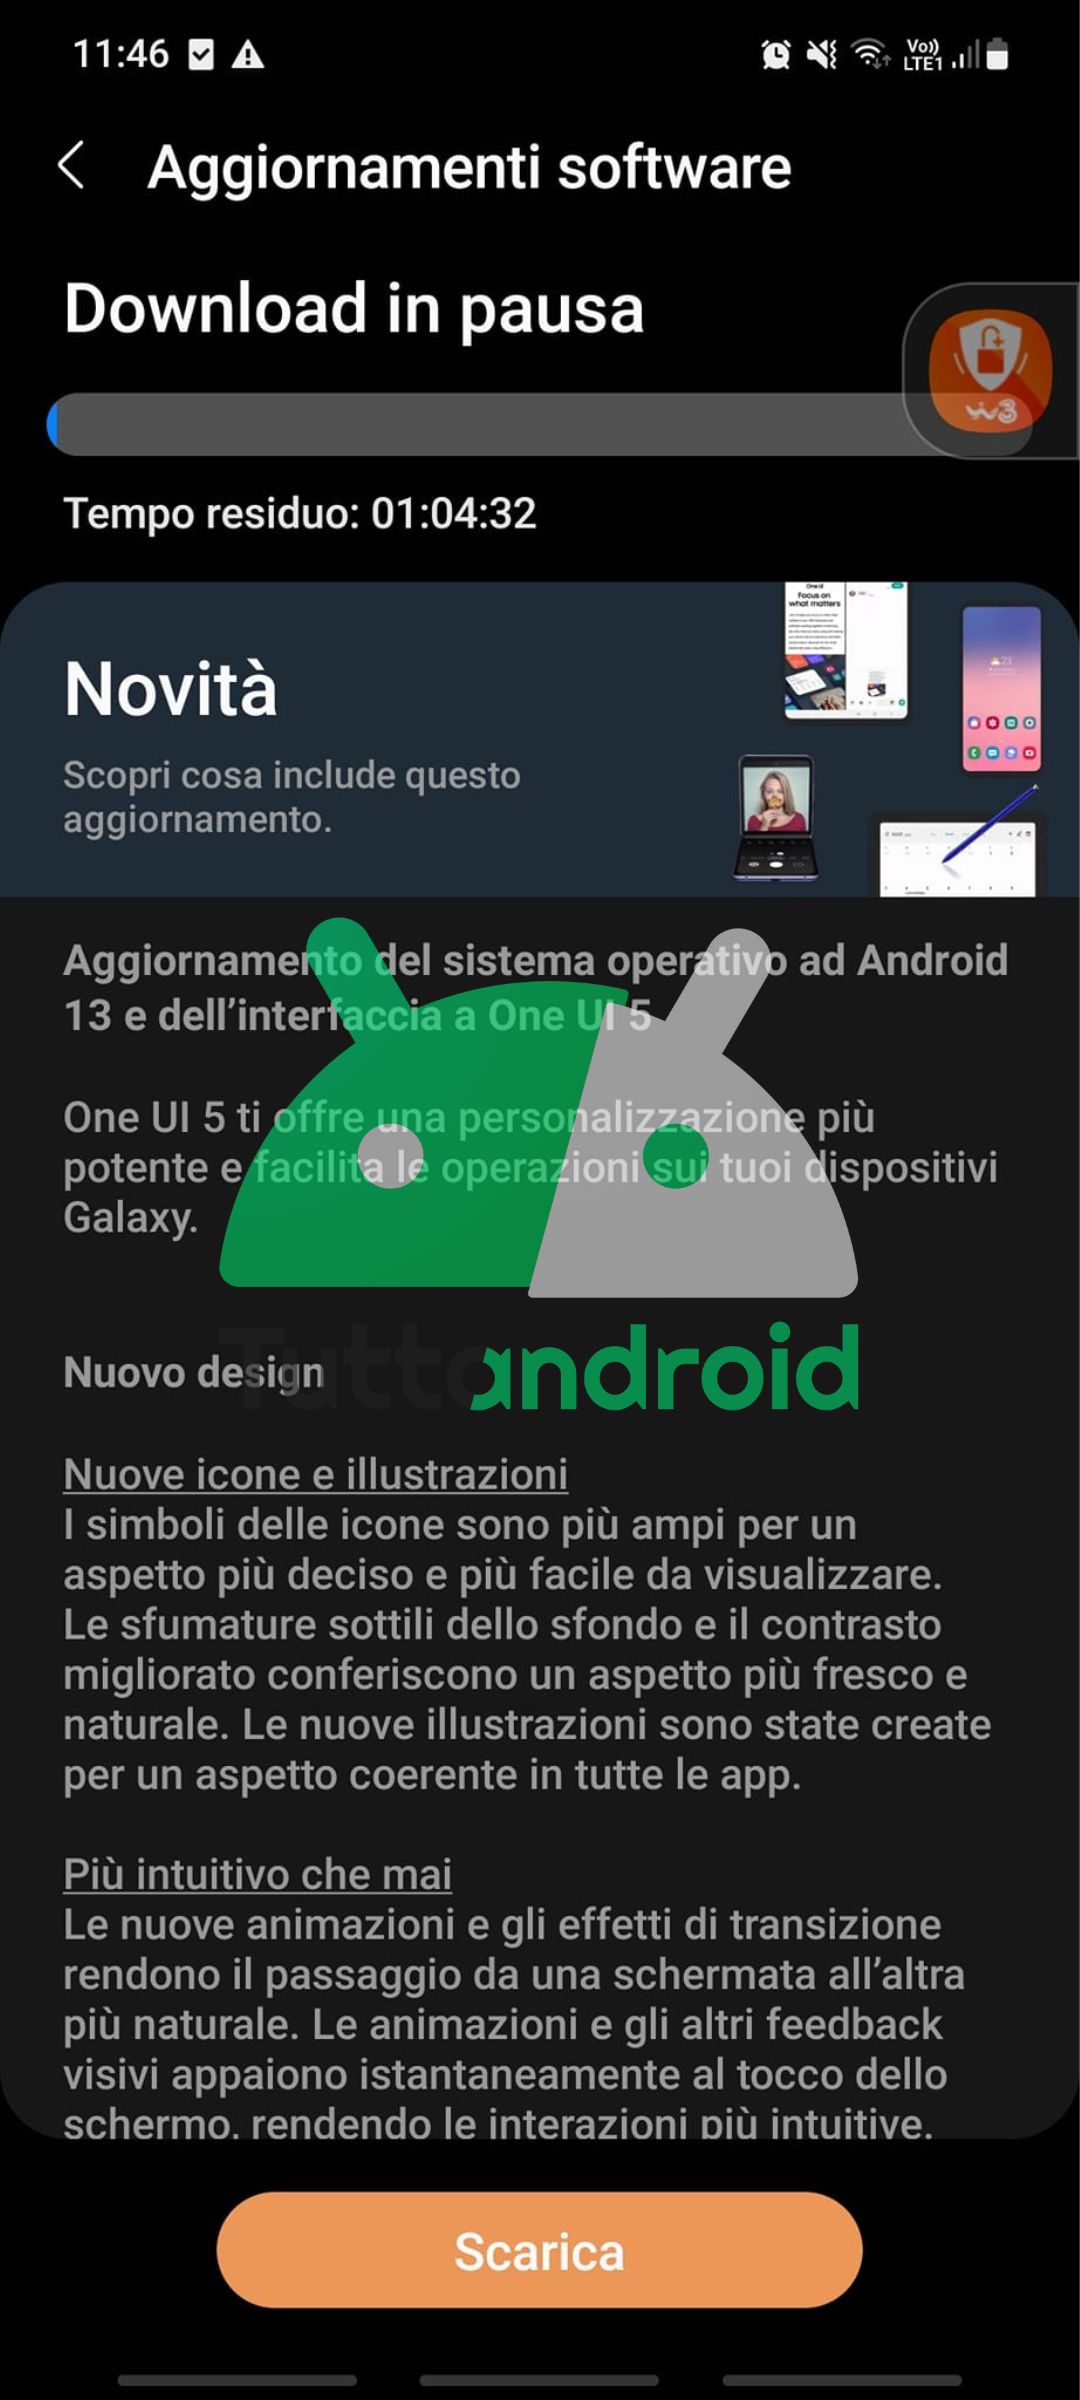 Android 13 con One UI 5.0 su Samsung Galaxy A71 in Italia